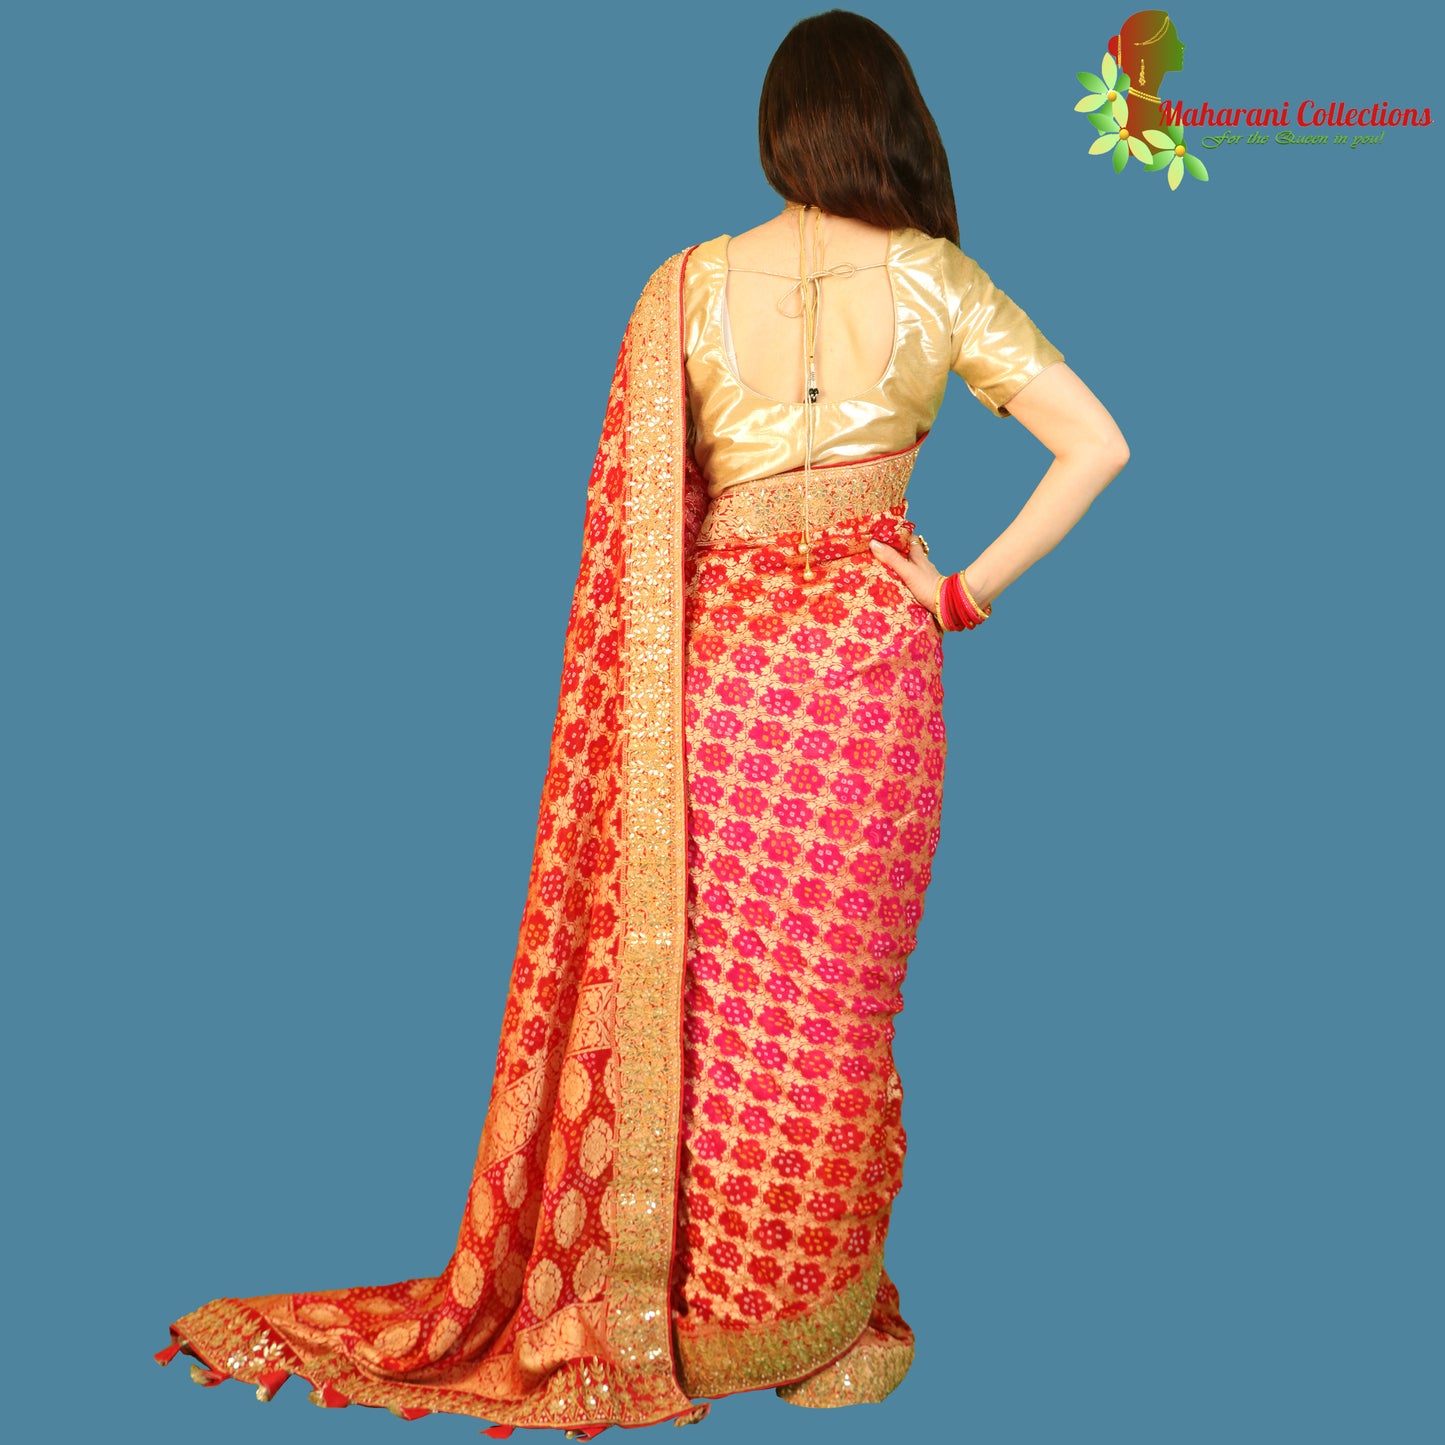 Maharani's Pure Handloom Banarasi Bandhej Silk Saree - Bridal Red (with Stitched Blouse and Petticoat)